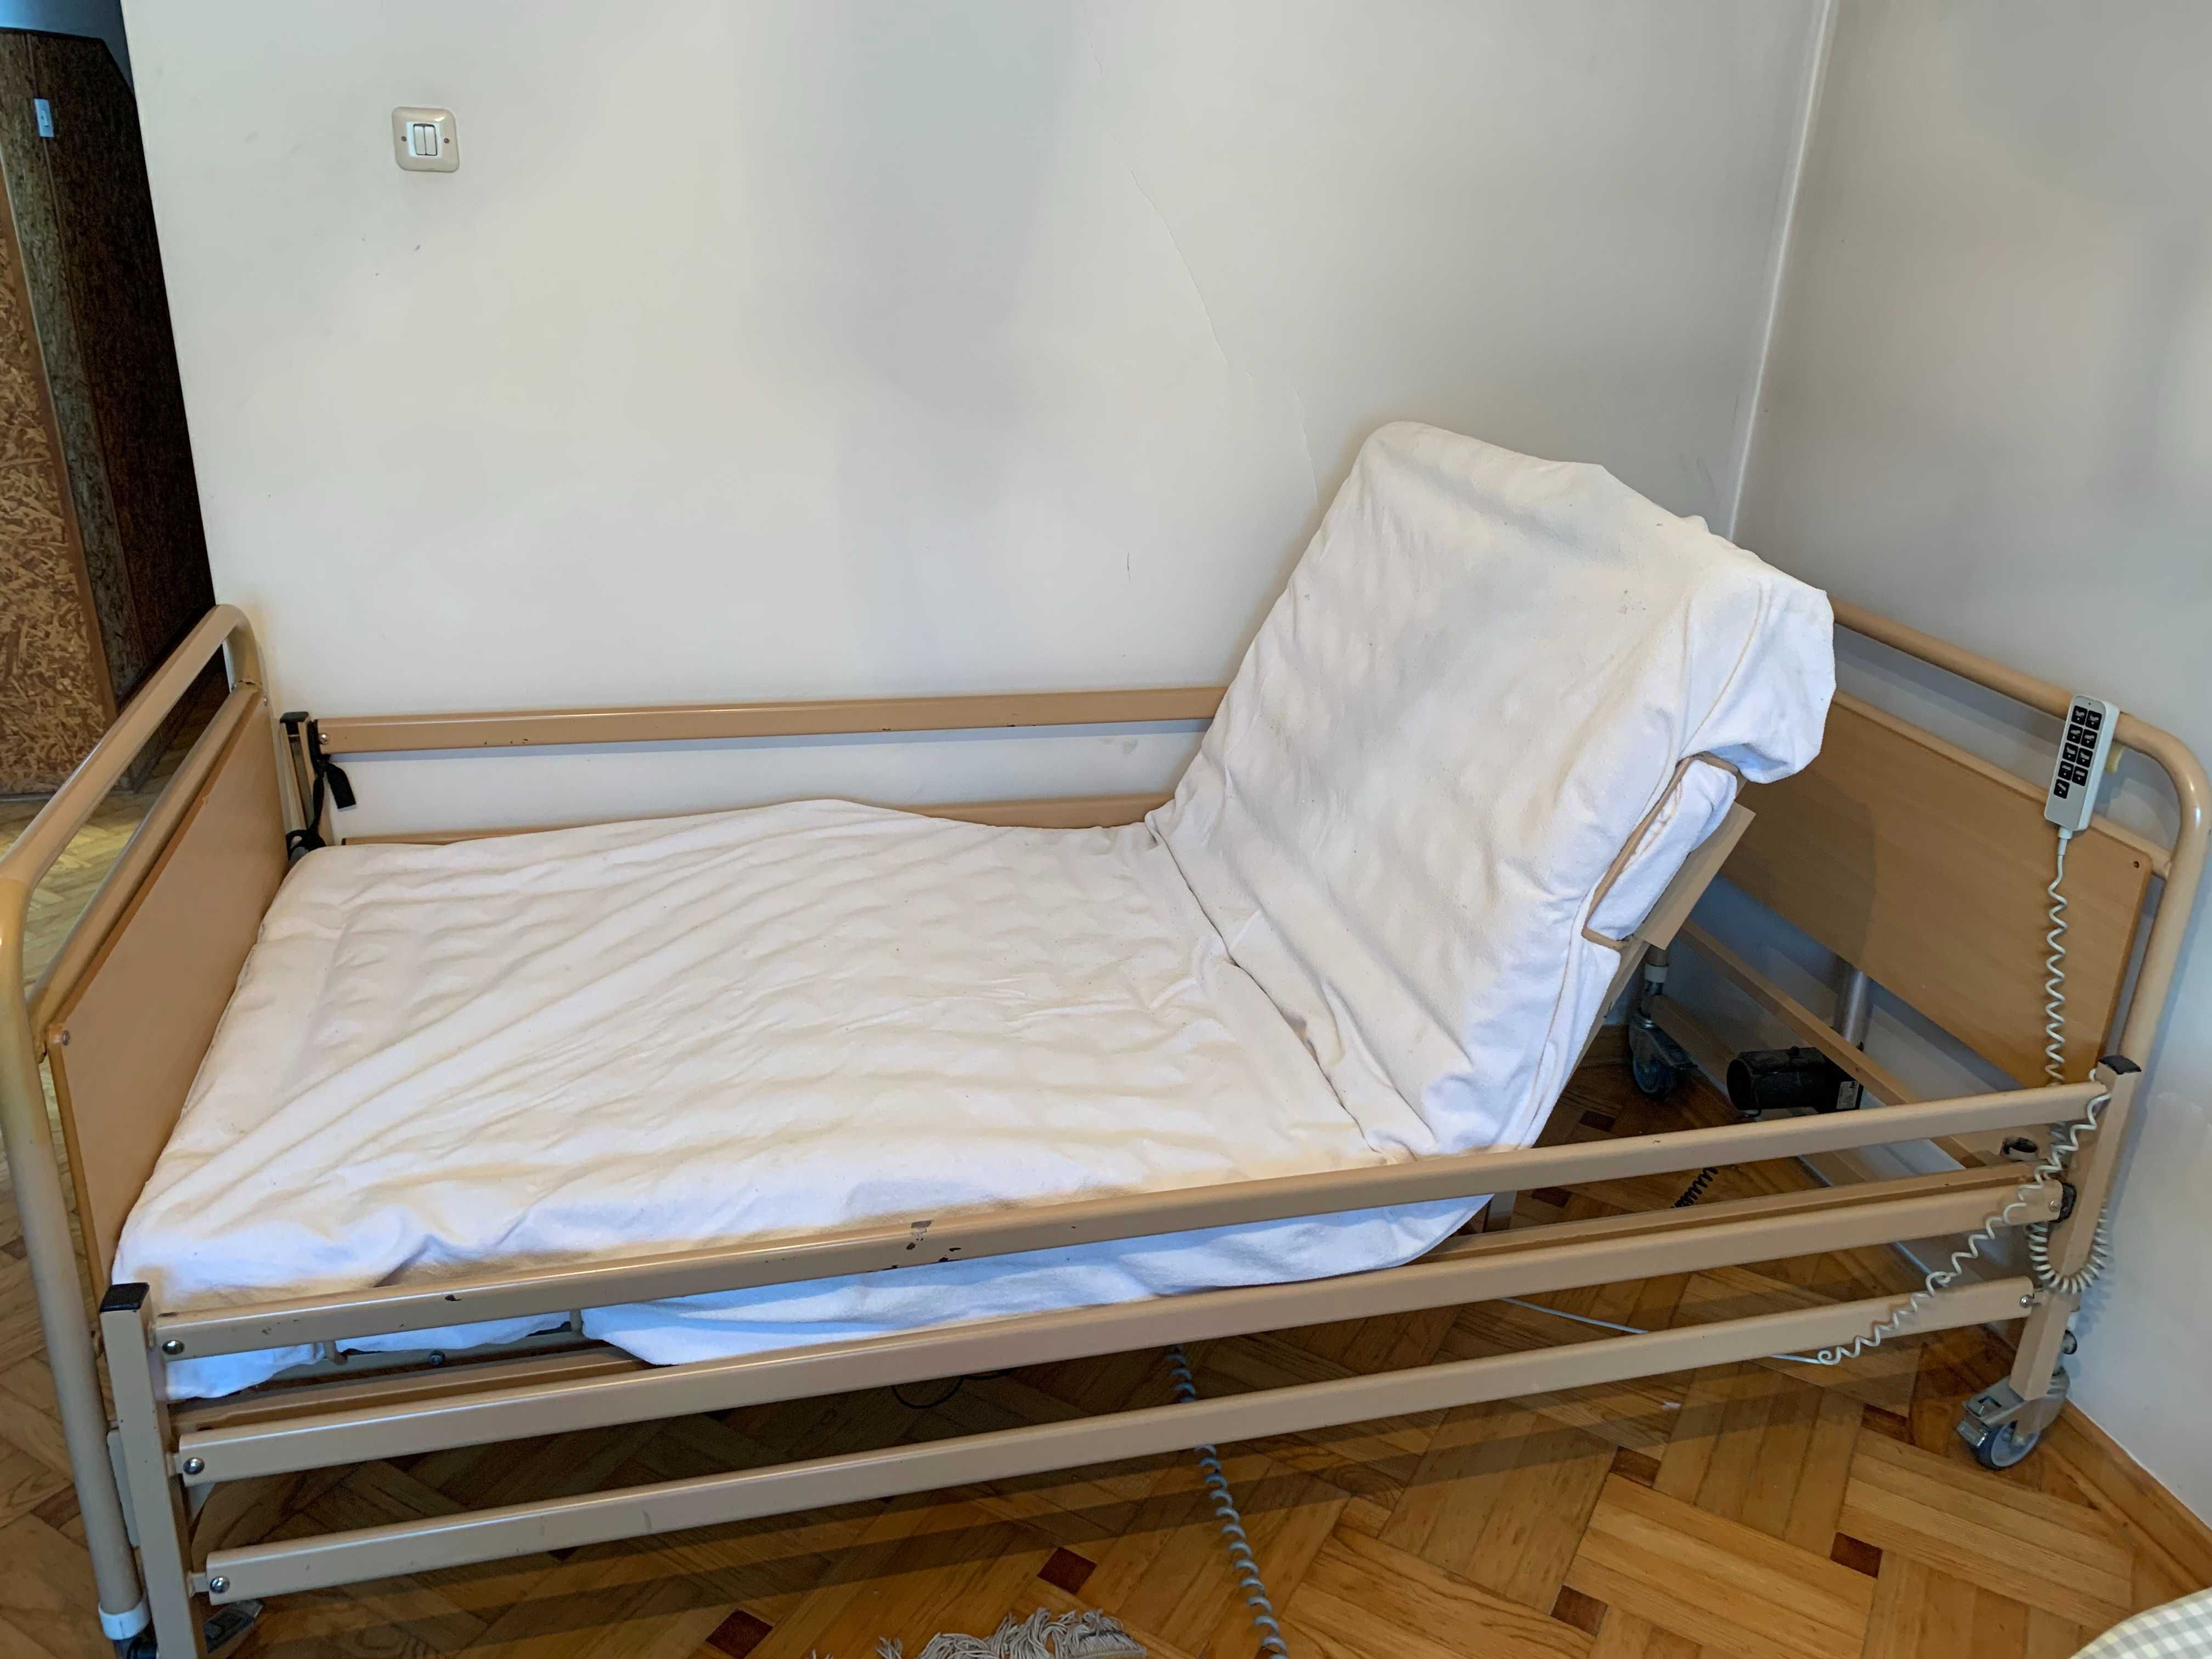 Łóżko rehabilitacyjne Dewert, dla osób niepełnosprawnych, elektryczne